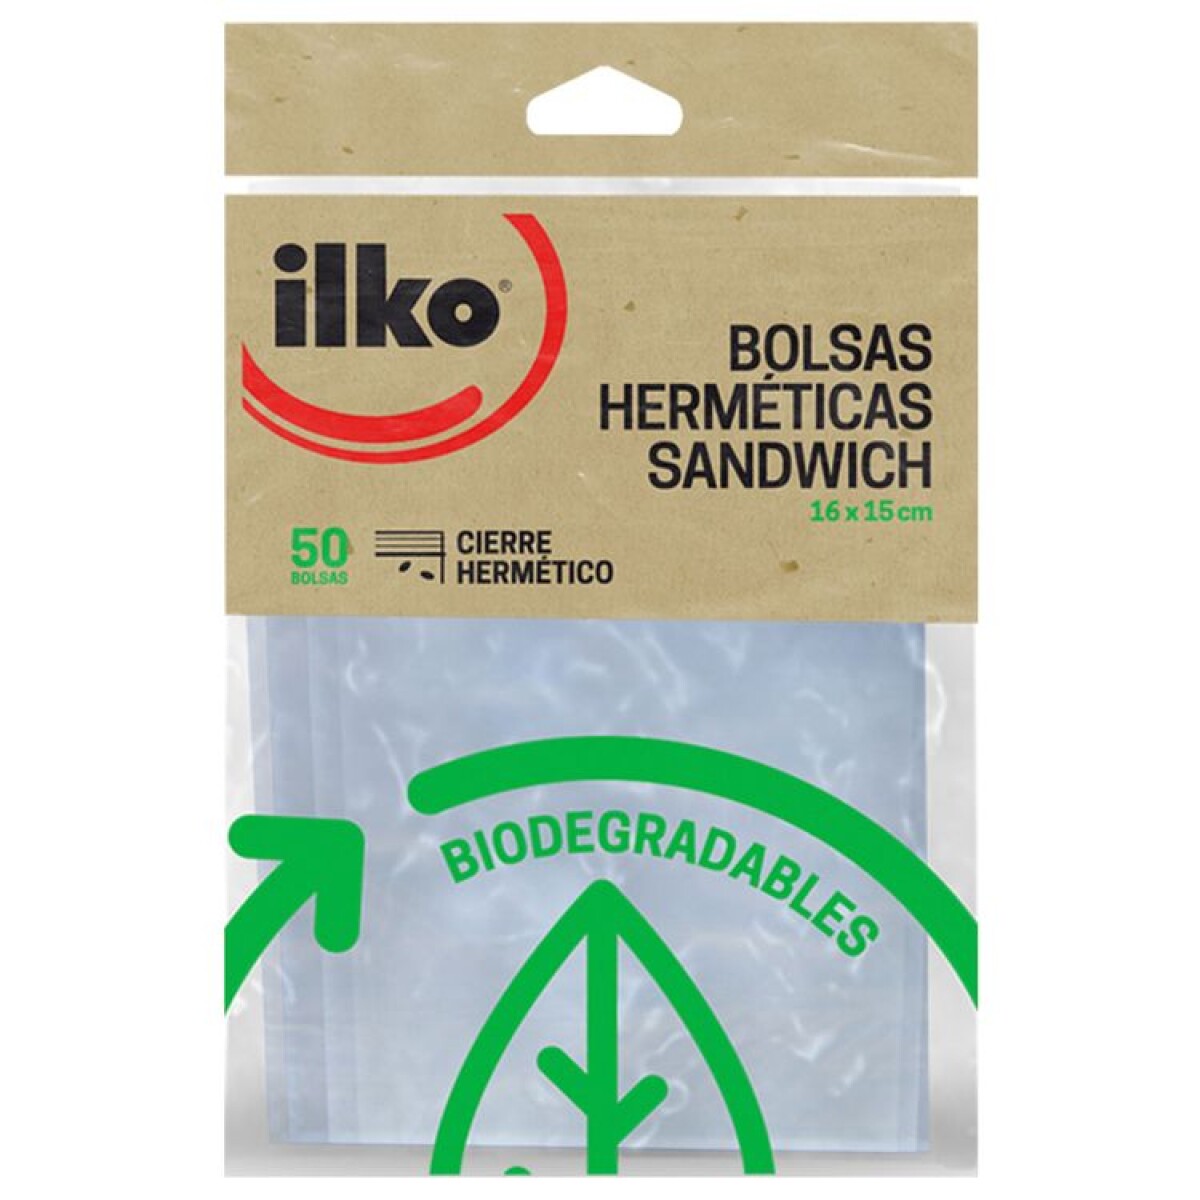 Bolsas Herméticas Biodegradables ILKO 16x15 cm 50 un. 